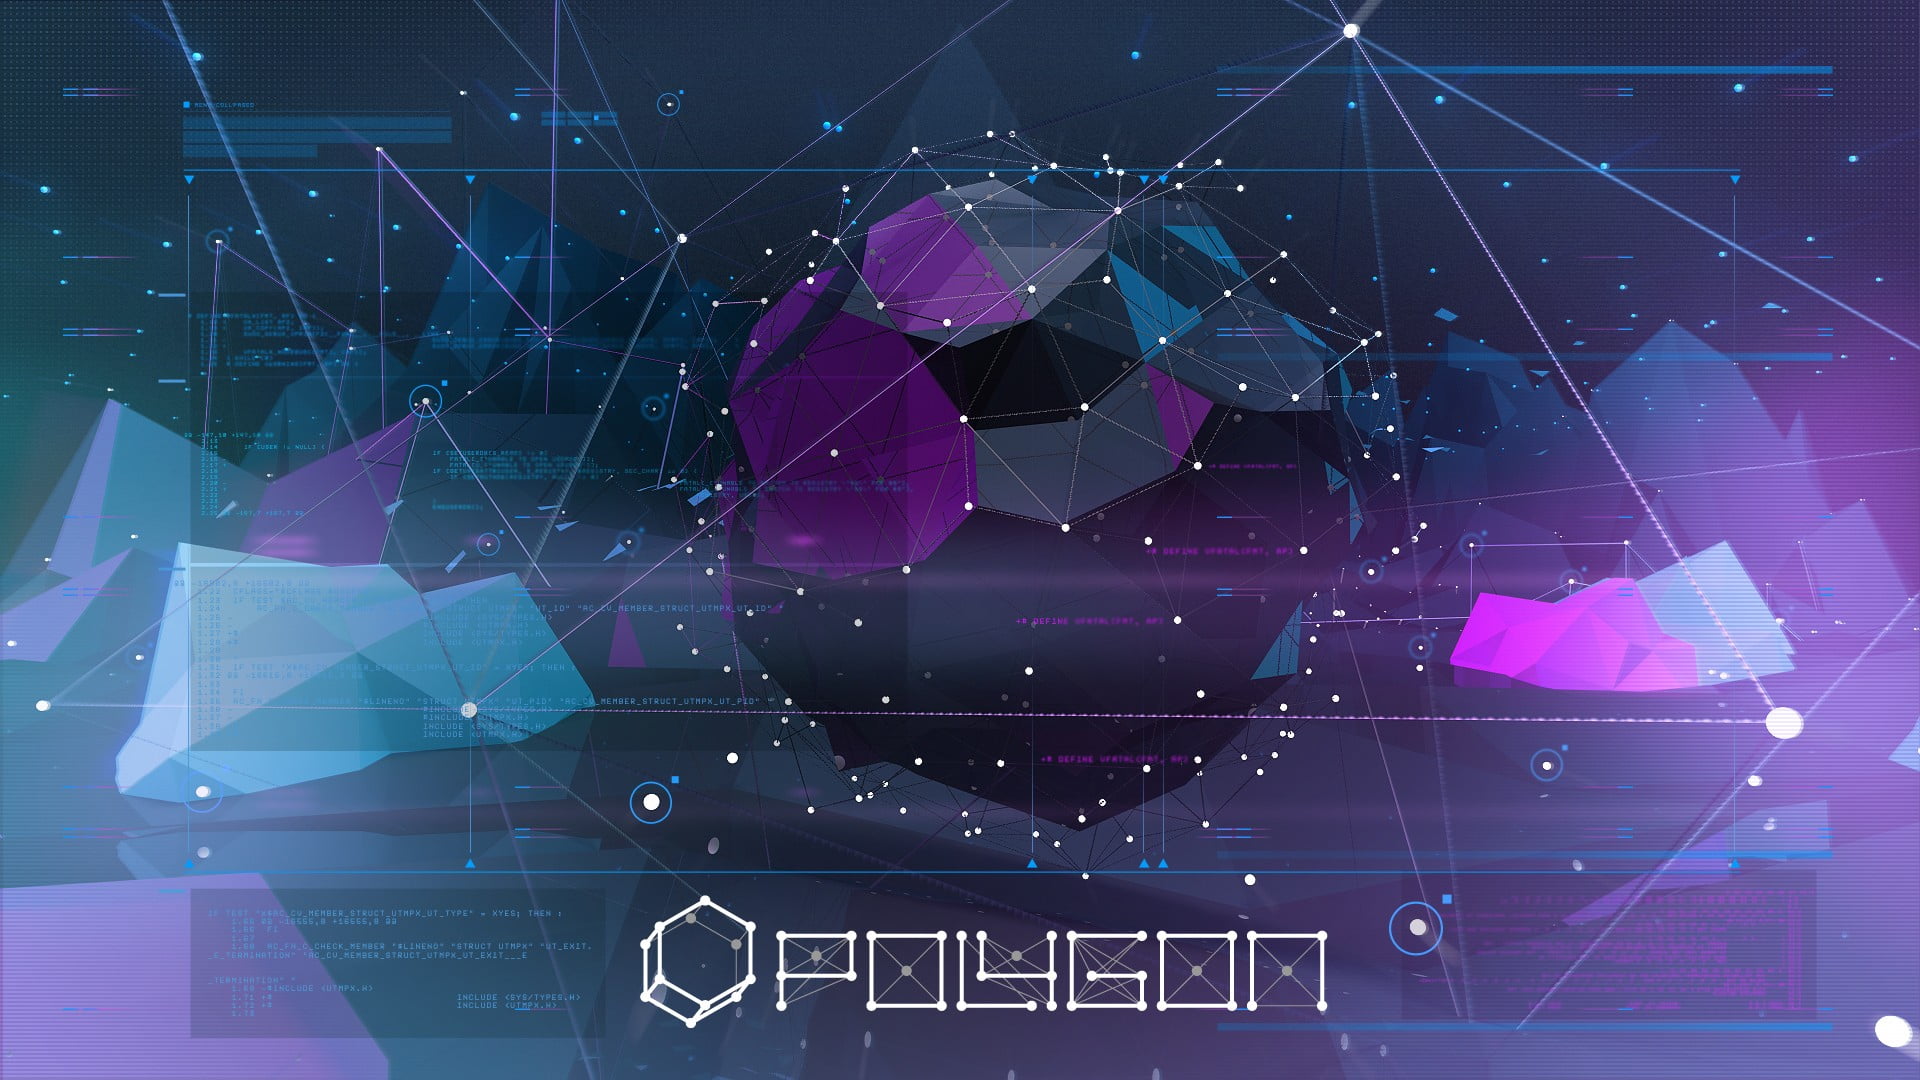 Прогноз криптовалюты Polygon на 2021 года и обзор